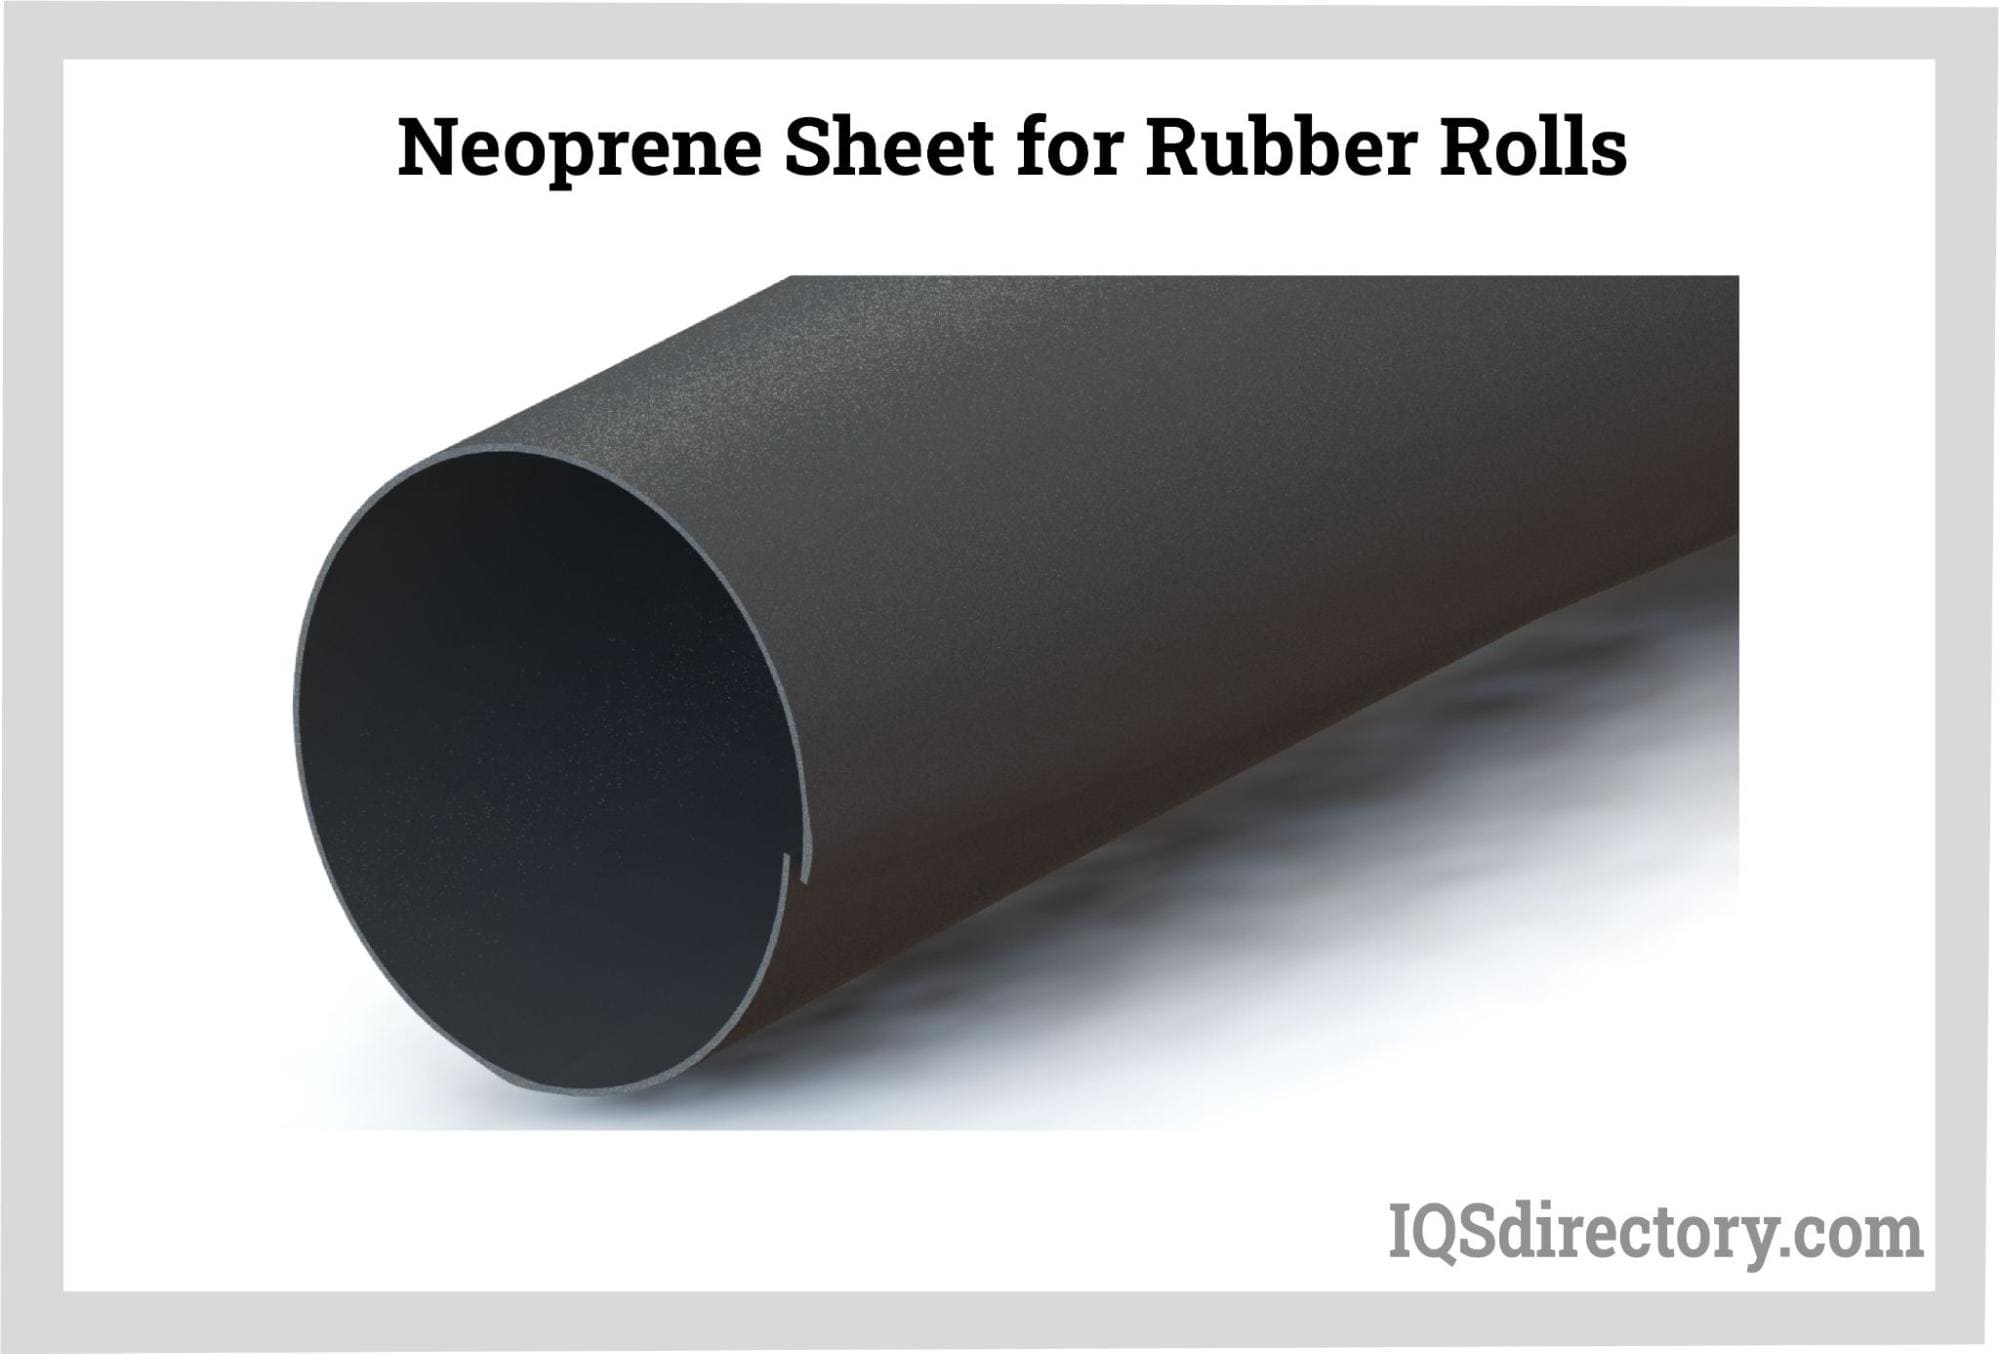 Neoprene Sheet for Rubber Rollers